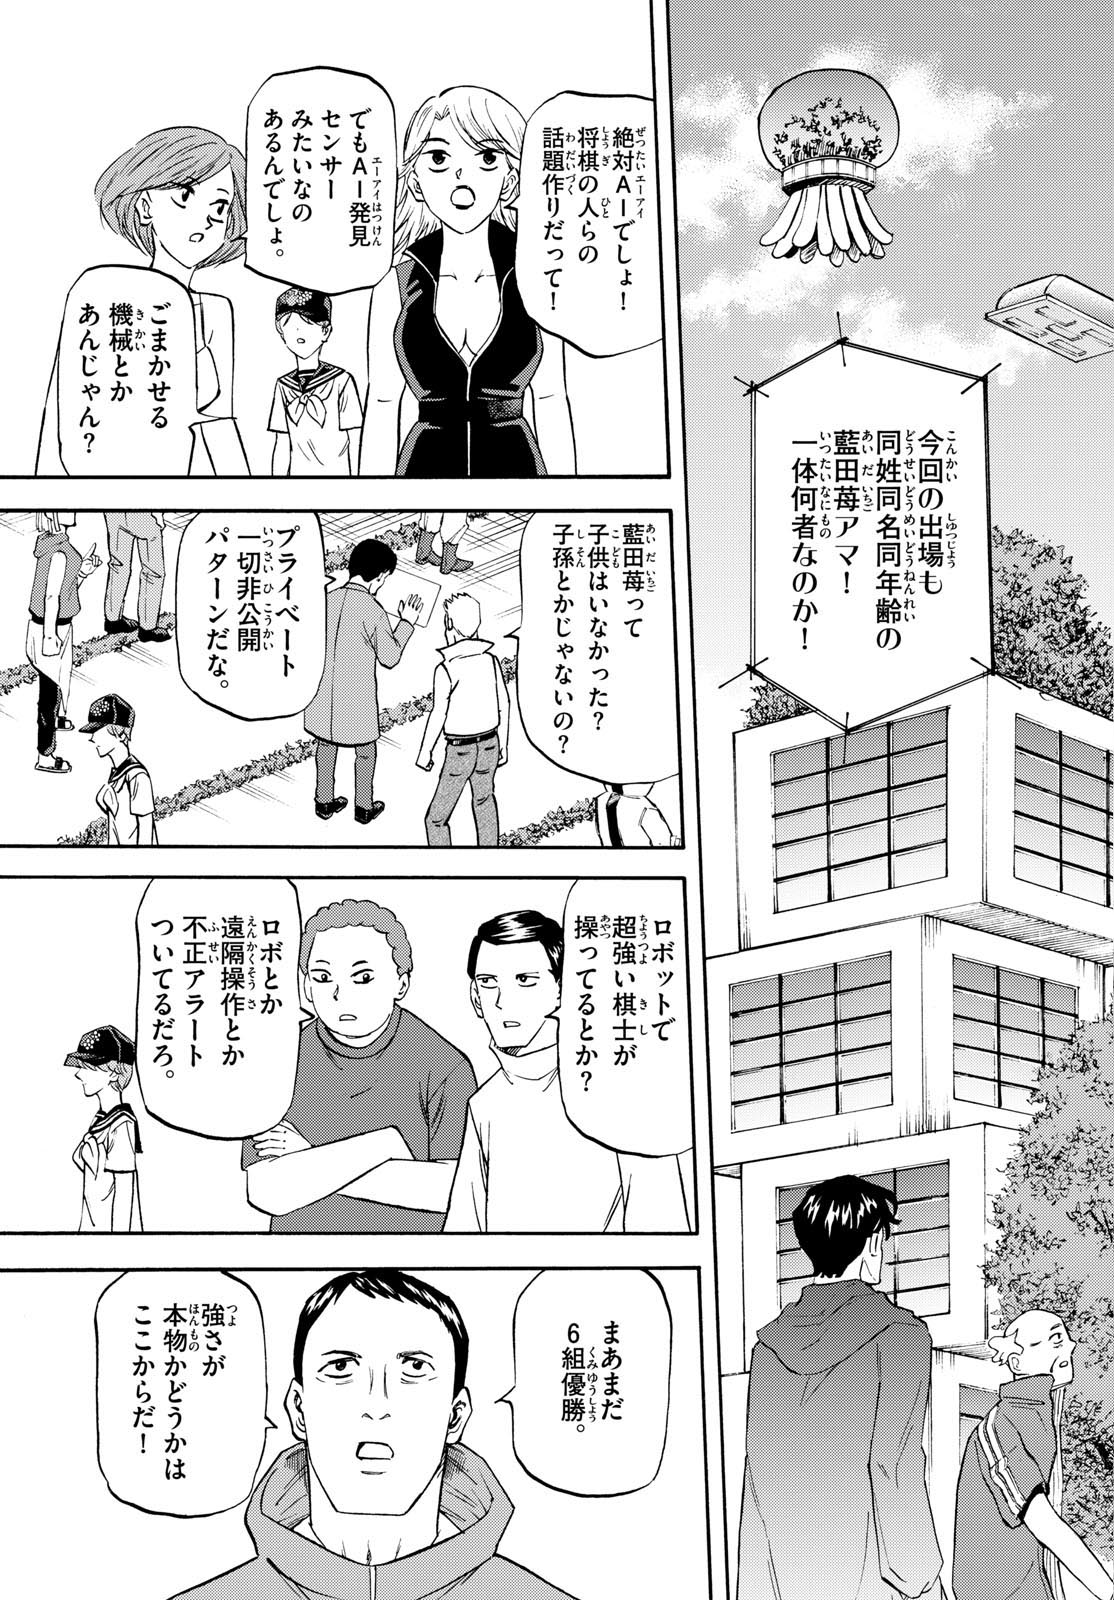 Tatsu to Ichigo - Chapter 195 - Page 3